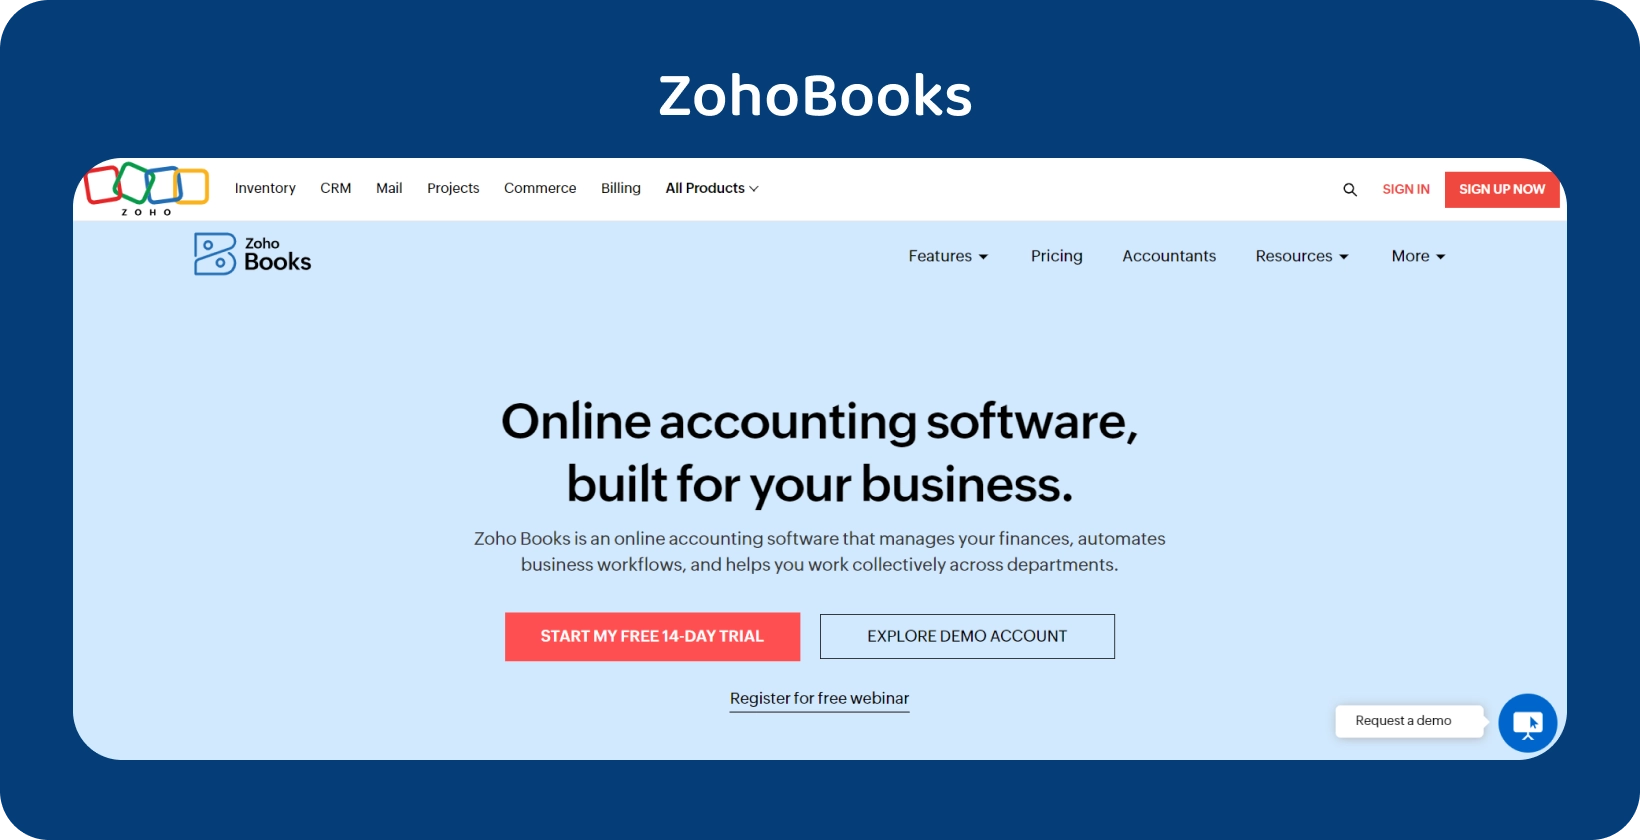 La bannière de la page d’accueil de Zoho Books met en avant son logiciel de comptabilité en ligne adapté aux entreprises pour rationaliser les opérations